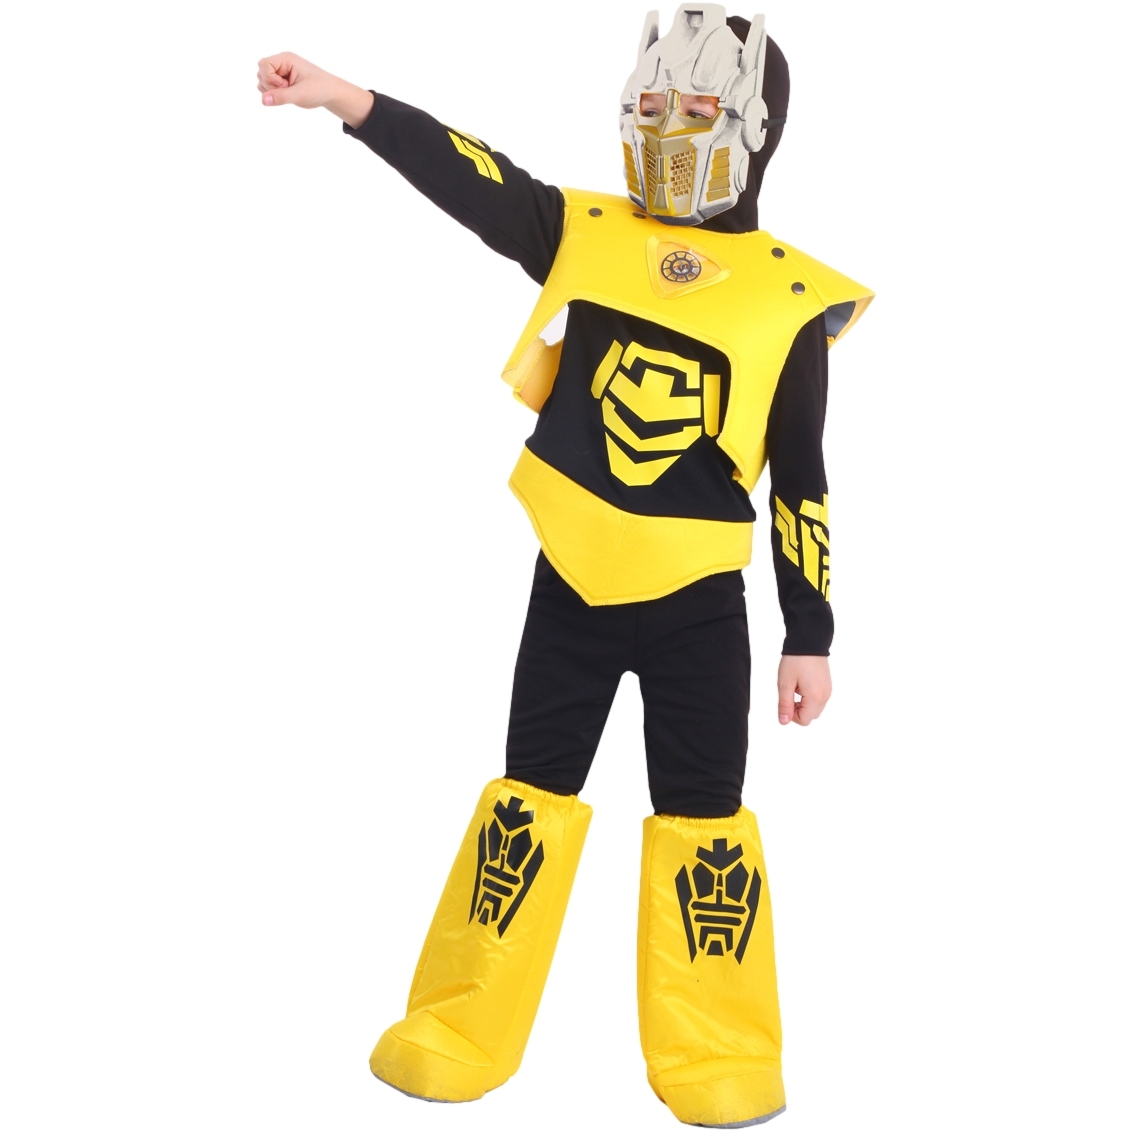 Карнавальный костюм "Робот" (рубашка с капюшоном,брюки,жилет,ботинки,маска) размер 128-64